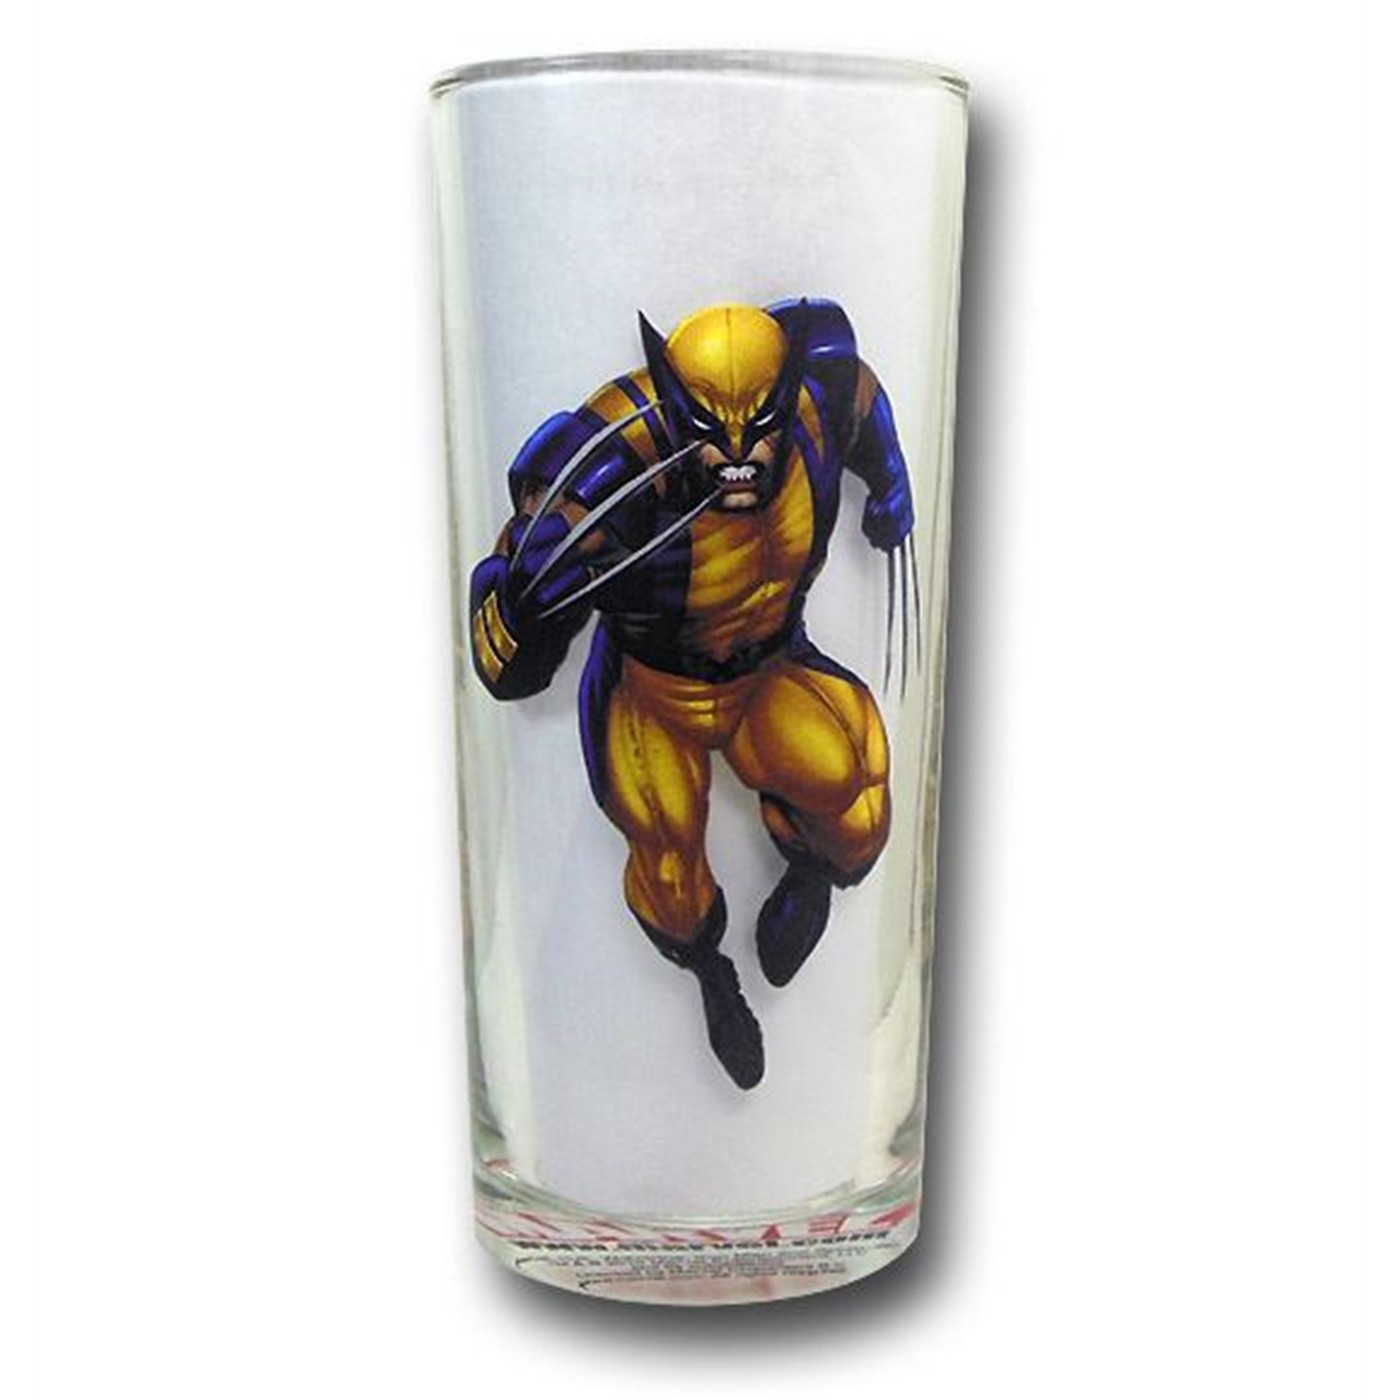 Marvel Heroes Modern Images Cooler Glass Set of 4